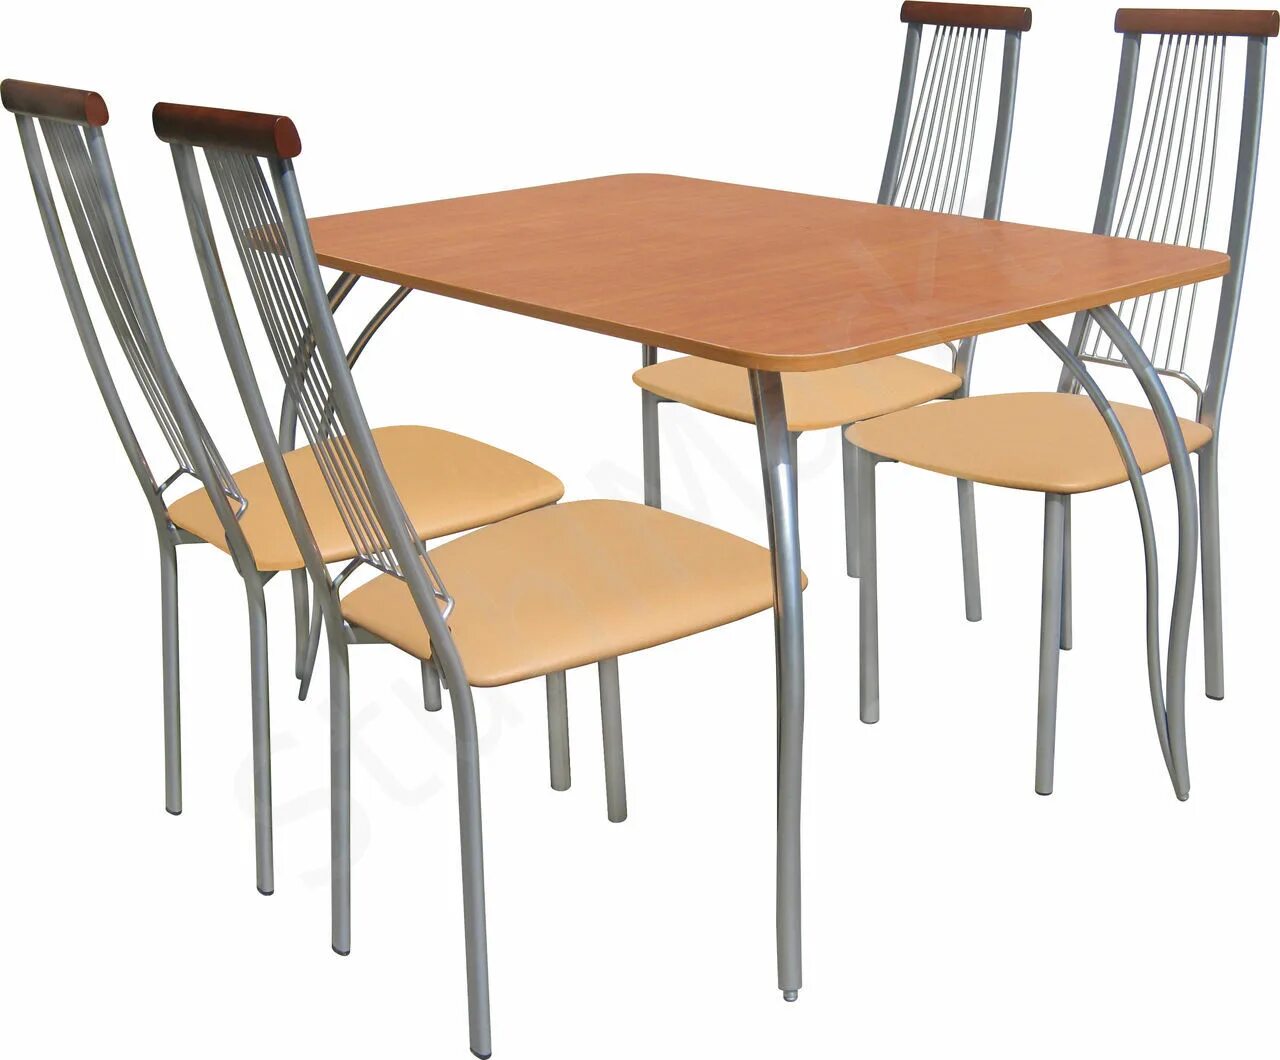 Стол м141. Обеденная группа "стандарт-4", стол м141 и 4 стула м54-01. Обеденный комплект "стол Лион ПМ+стулья Кармен".